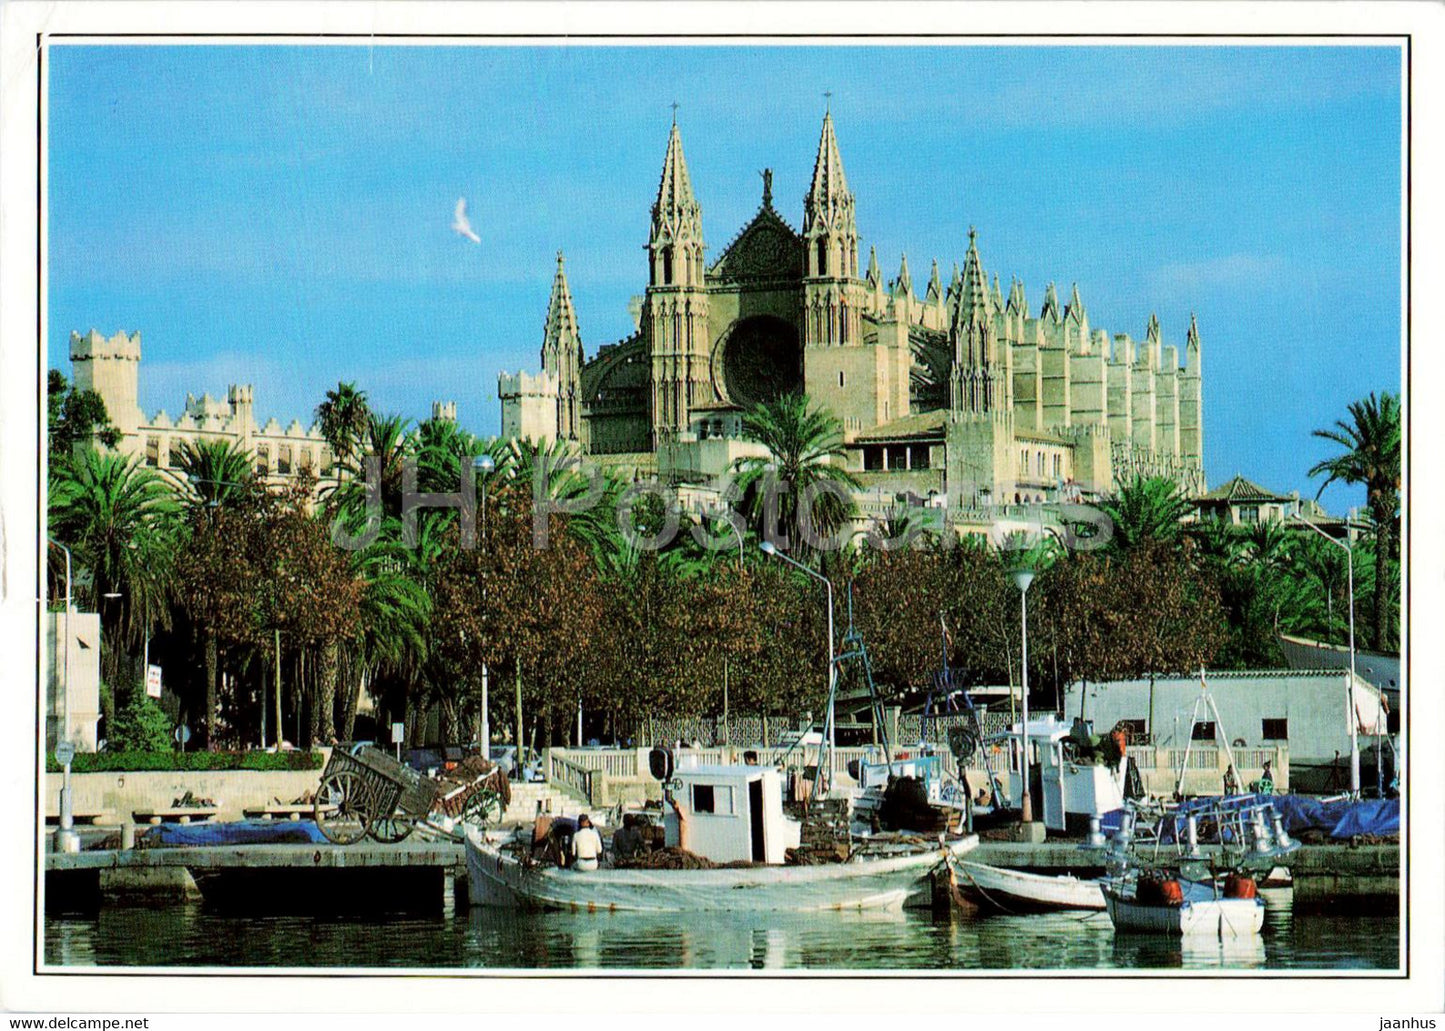 La Catedral - Palma de Mallorca - cathedral - boat - 463 - Spain - used - JH Postcards